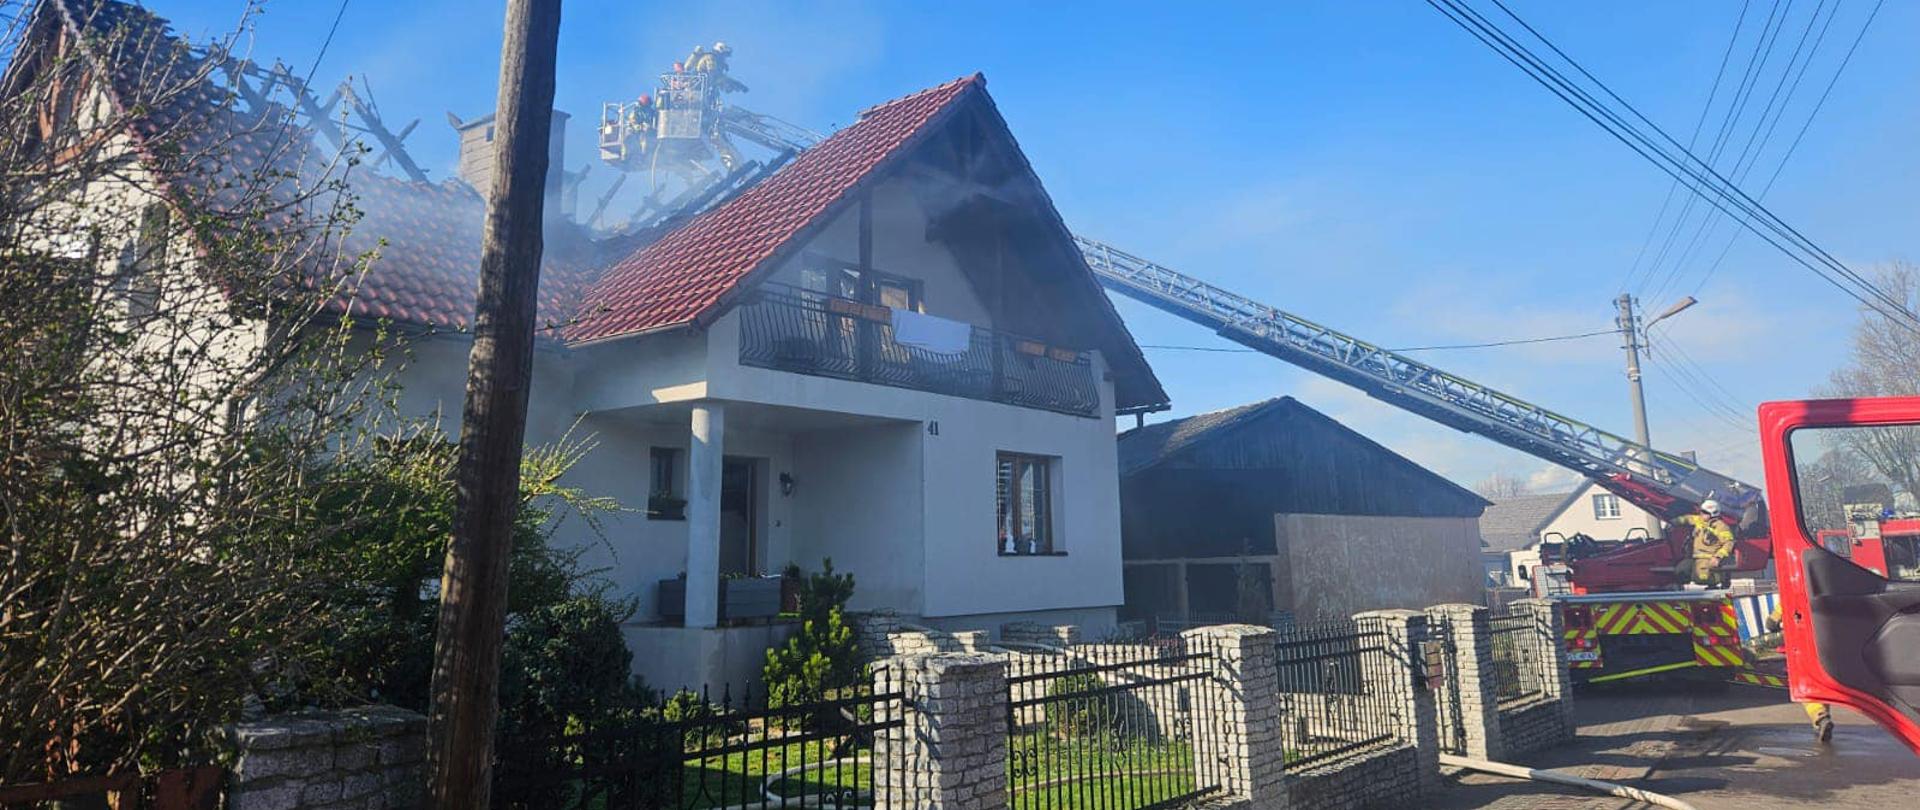 Na zdjęciu znajduje się drabina hydrauliczna , z której działania prowadzą strażacy w SOUO, na pierwszym planie znajduje się budynek mieszkalny z nadpalonym dachem